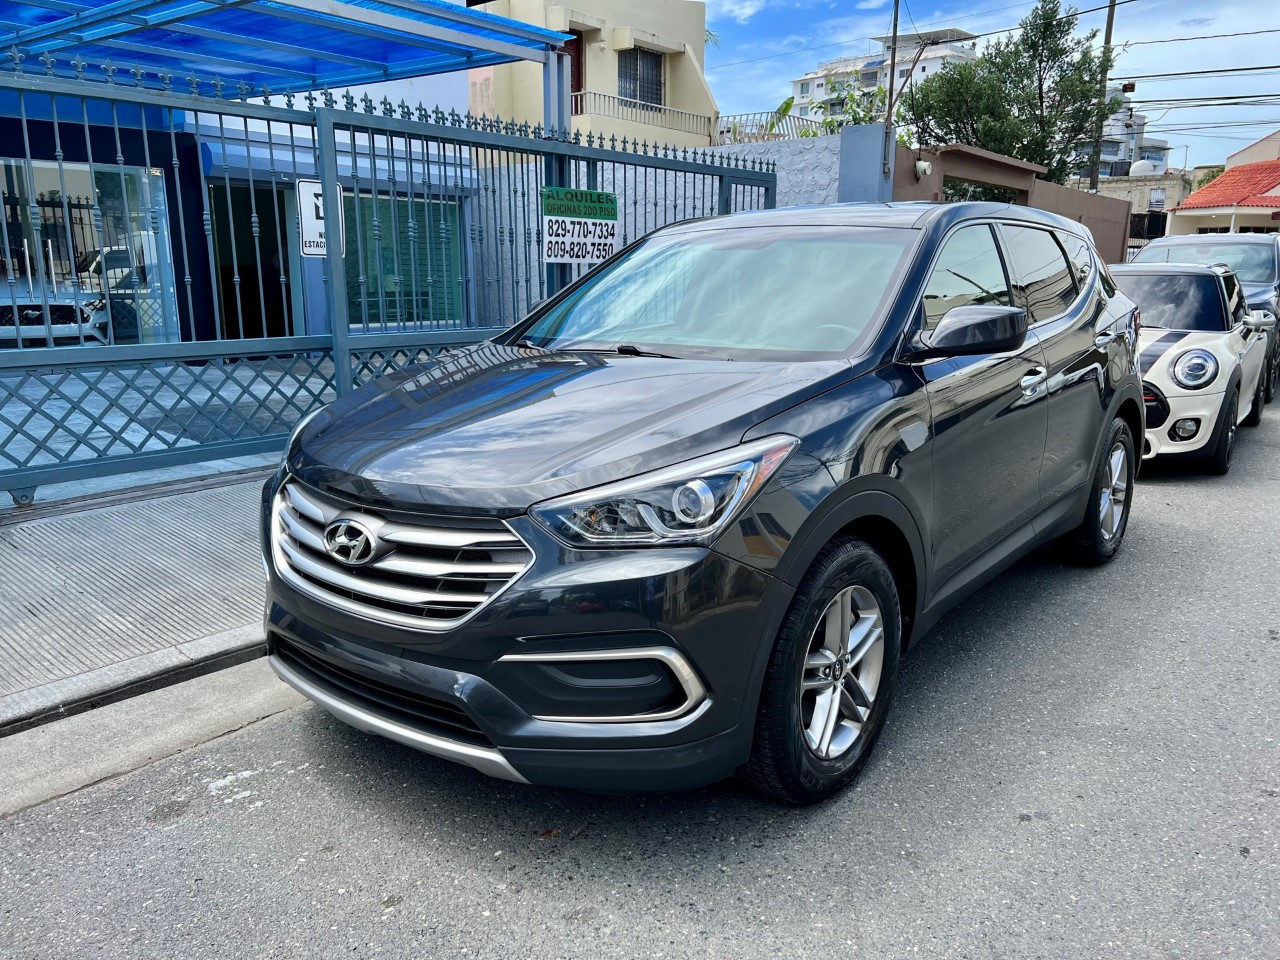 Hyundai Santa Fe Sport 2018 4x4